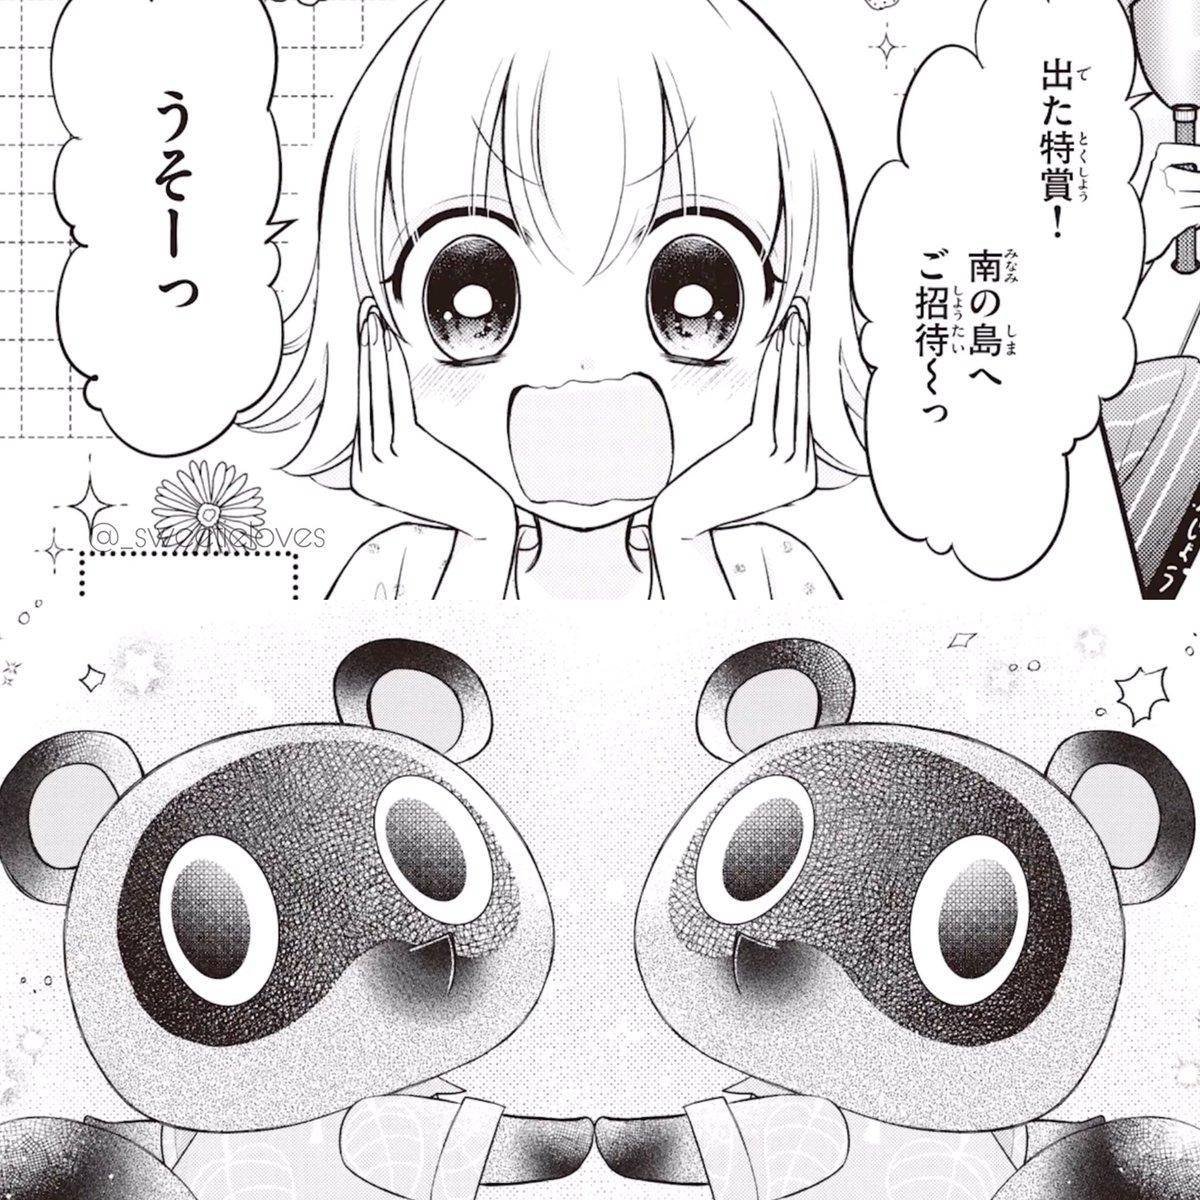 Animal Crossing New Horizons Manga